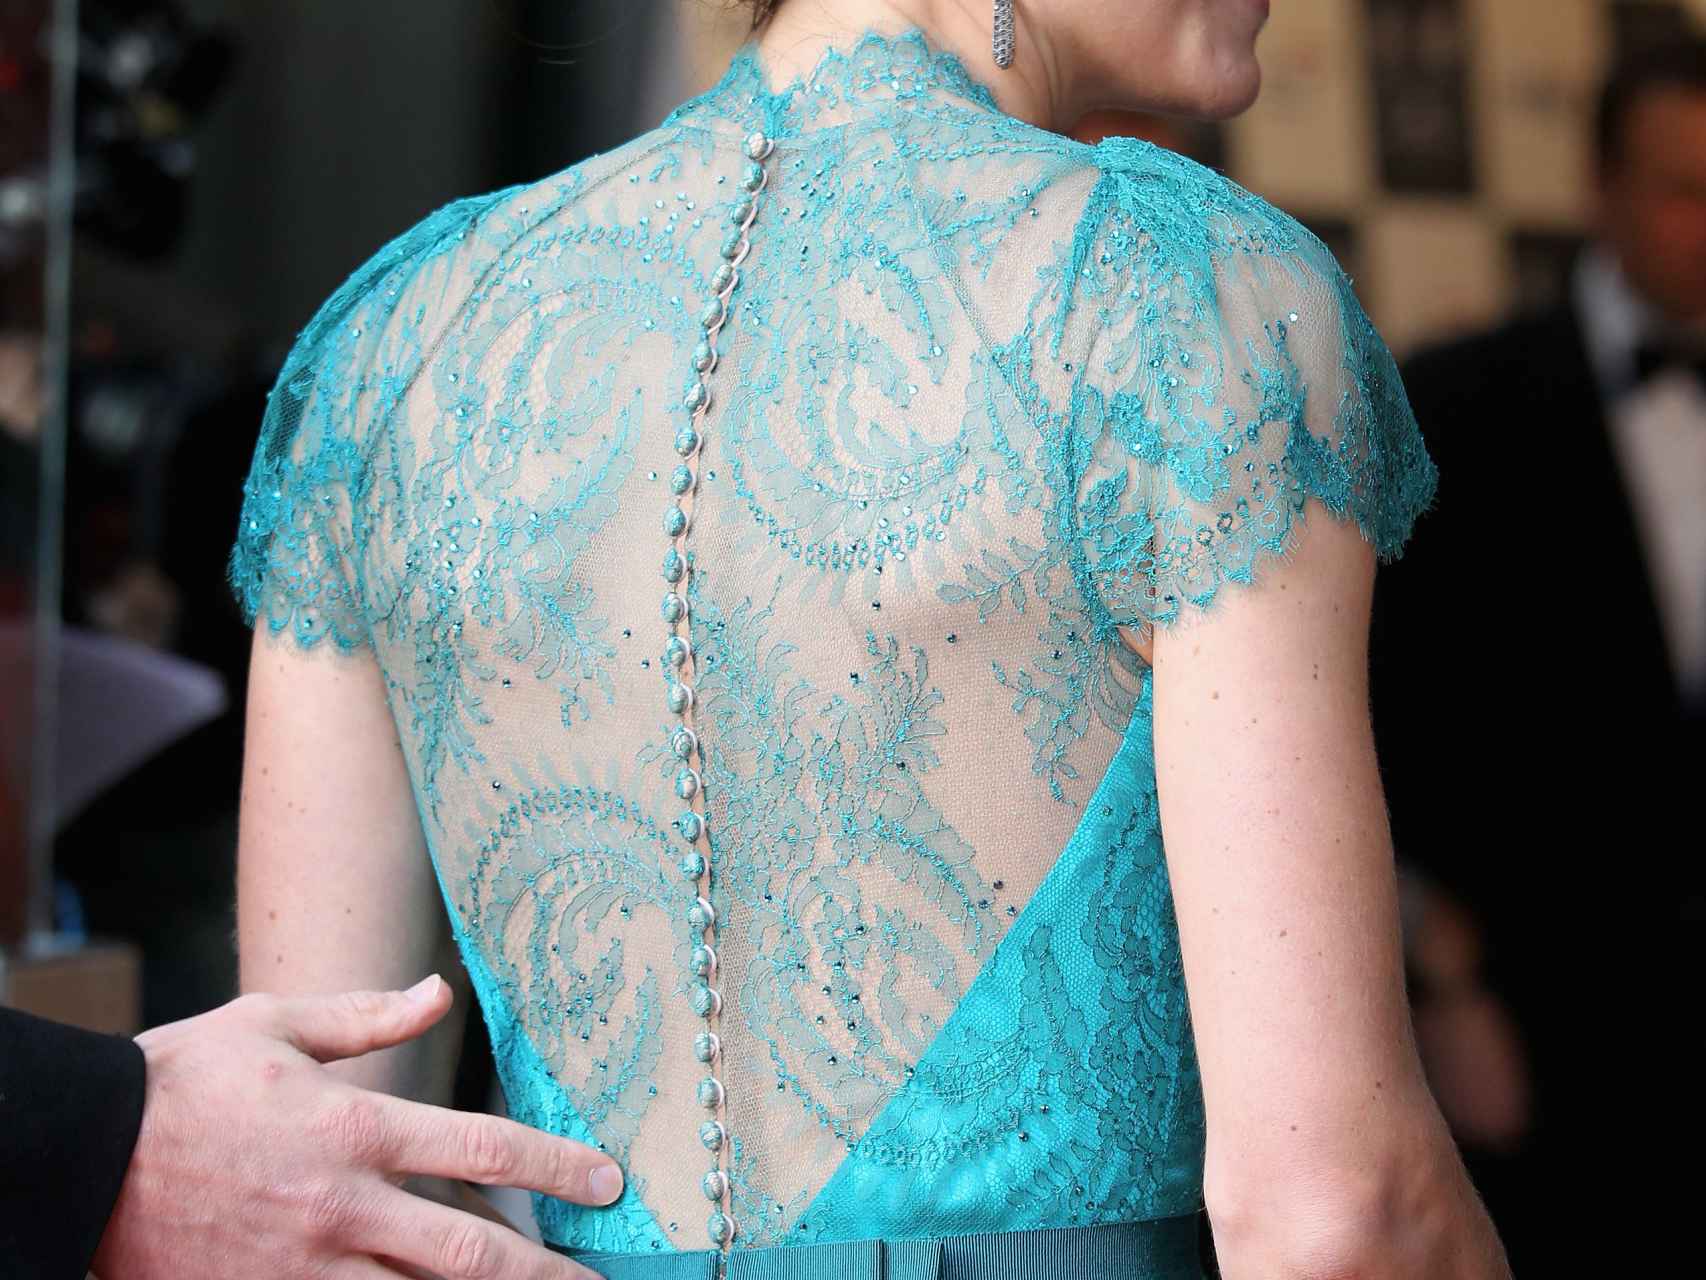 Espalda de encaje del vestido azul cerceta que Kate Middleton llevó.